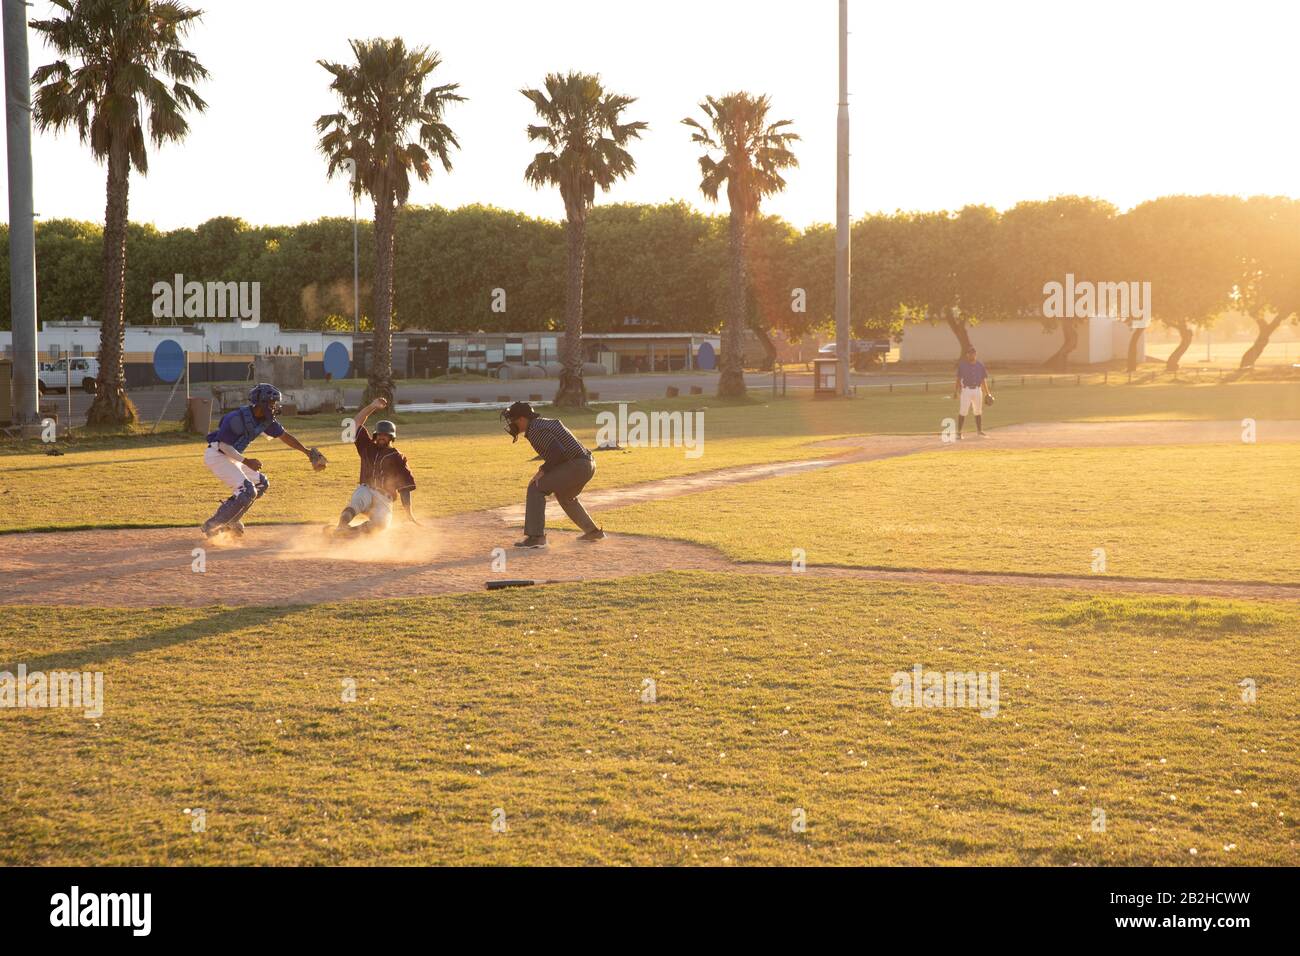 Joueurs de base-ball pendant le match Banque D'Images